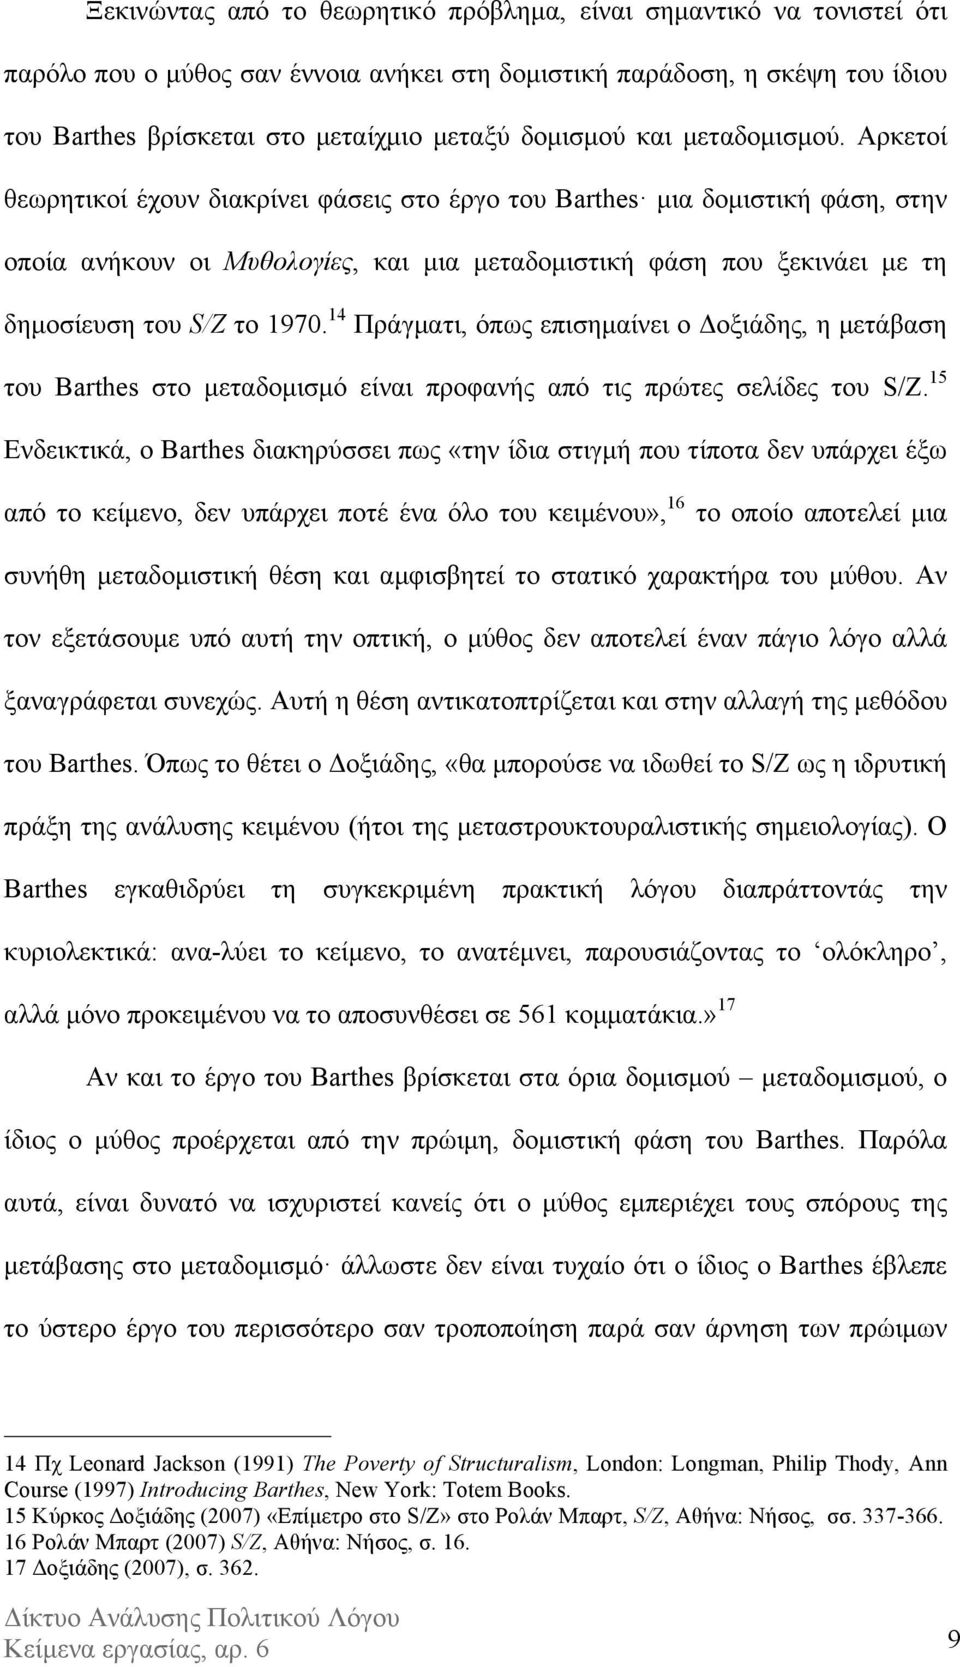 Αρκετοί θεωρητικοί έχουν διακρίνει φάσεις στο έργο του Barthes µια δοµιστική φάση, στην οποία ανήκουν οι Μυθολογίες, και µια µεταδοµιστική φάση που ξεκινάει µε τη δηµοσίευση του S/Z το 1970.